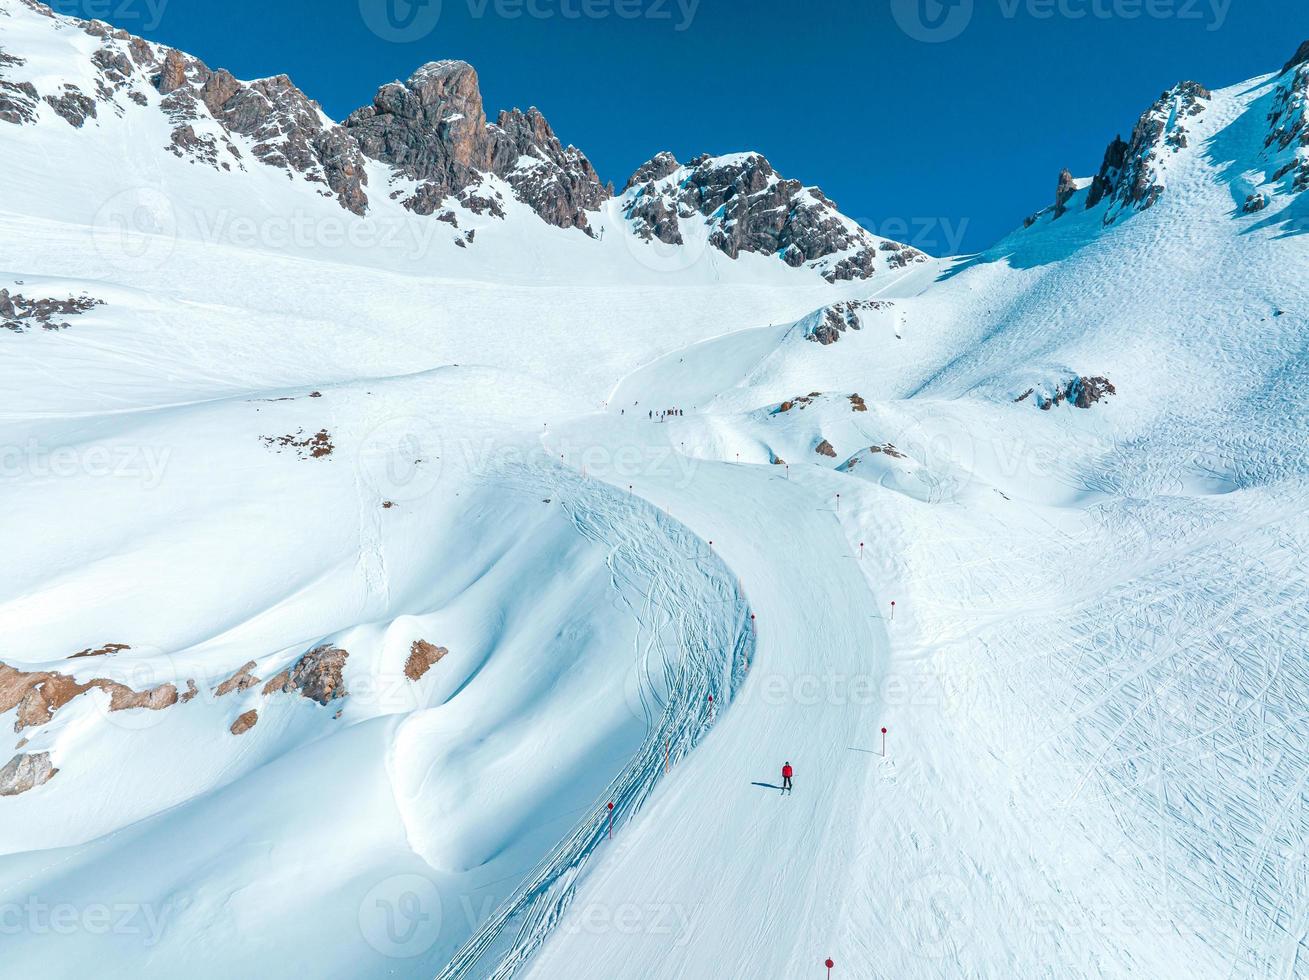 estación de esquí alpino st. anton am arlberg en invierno foto